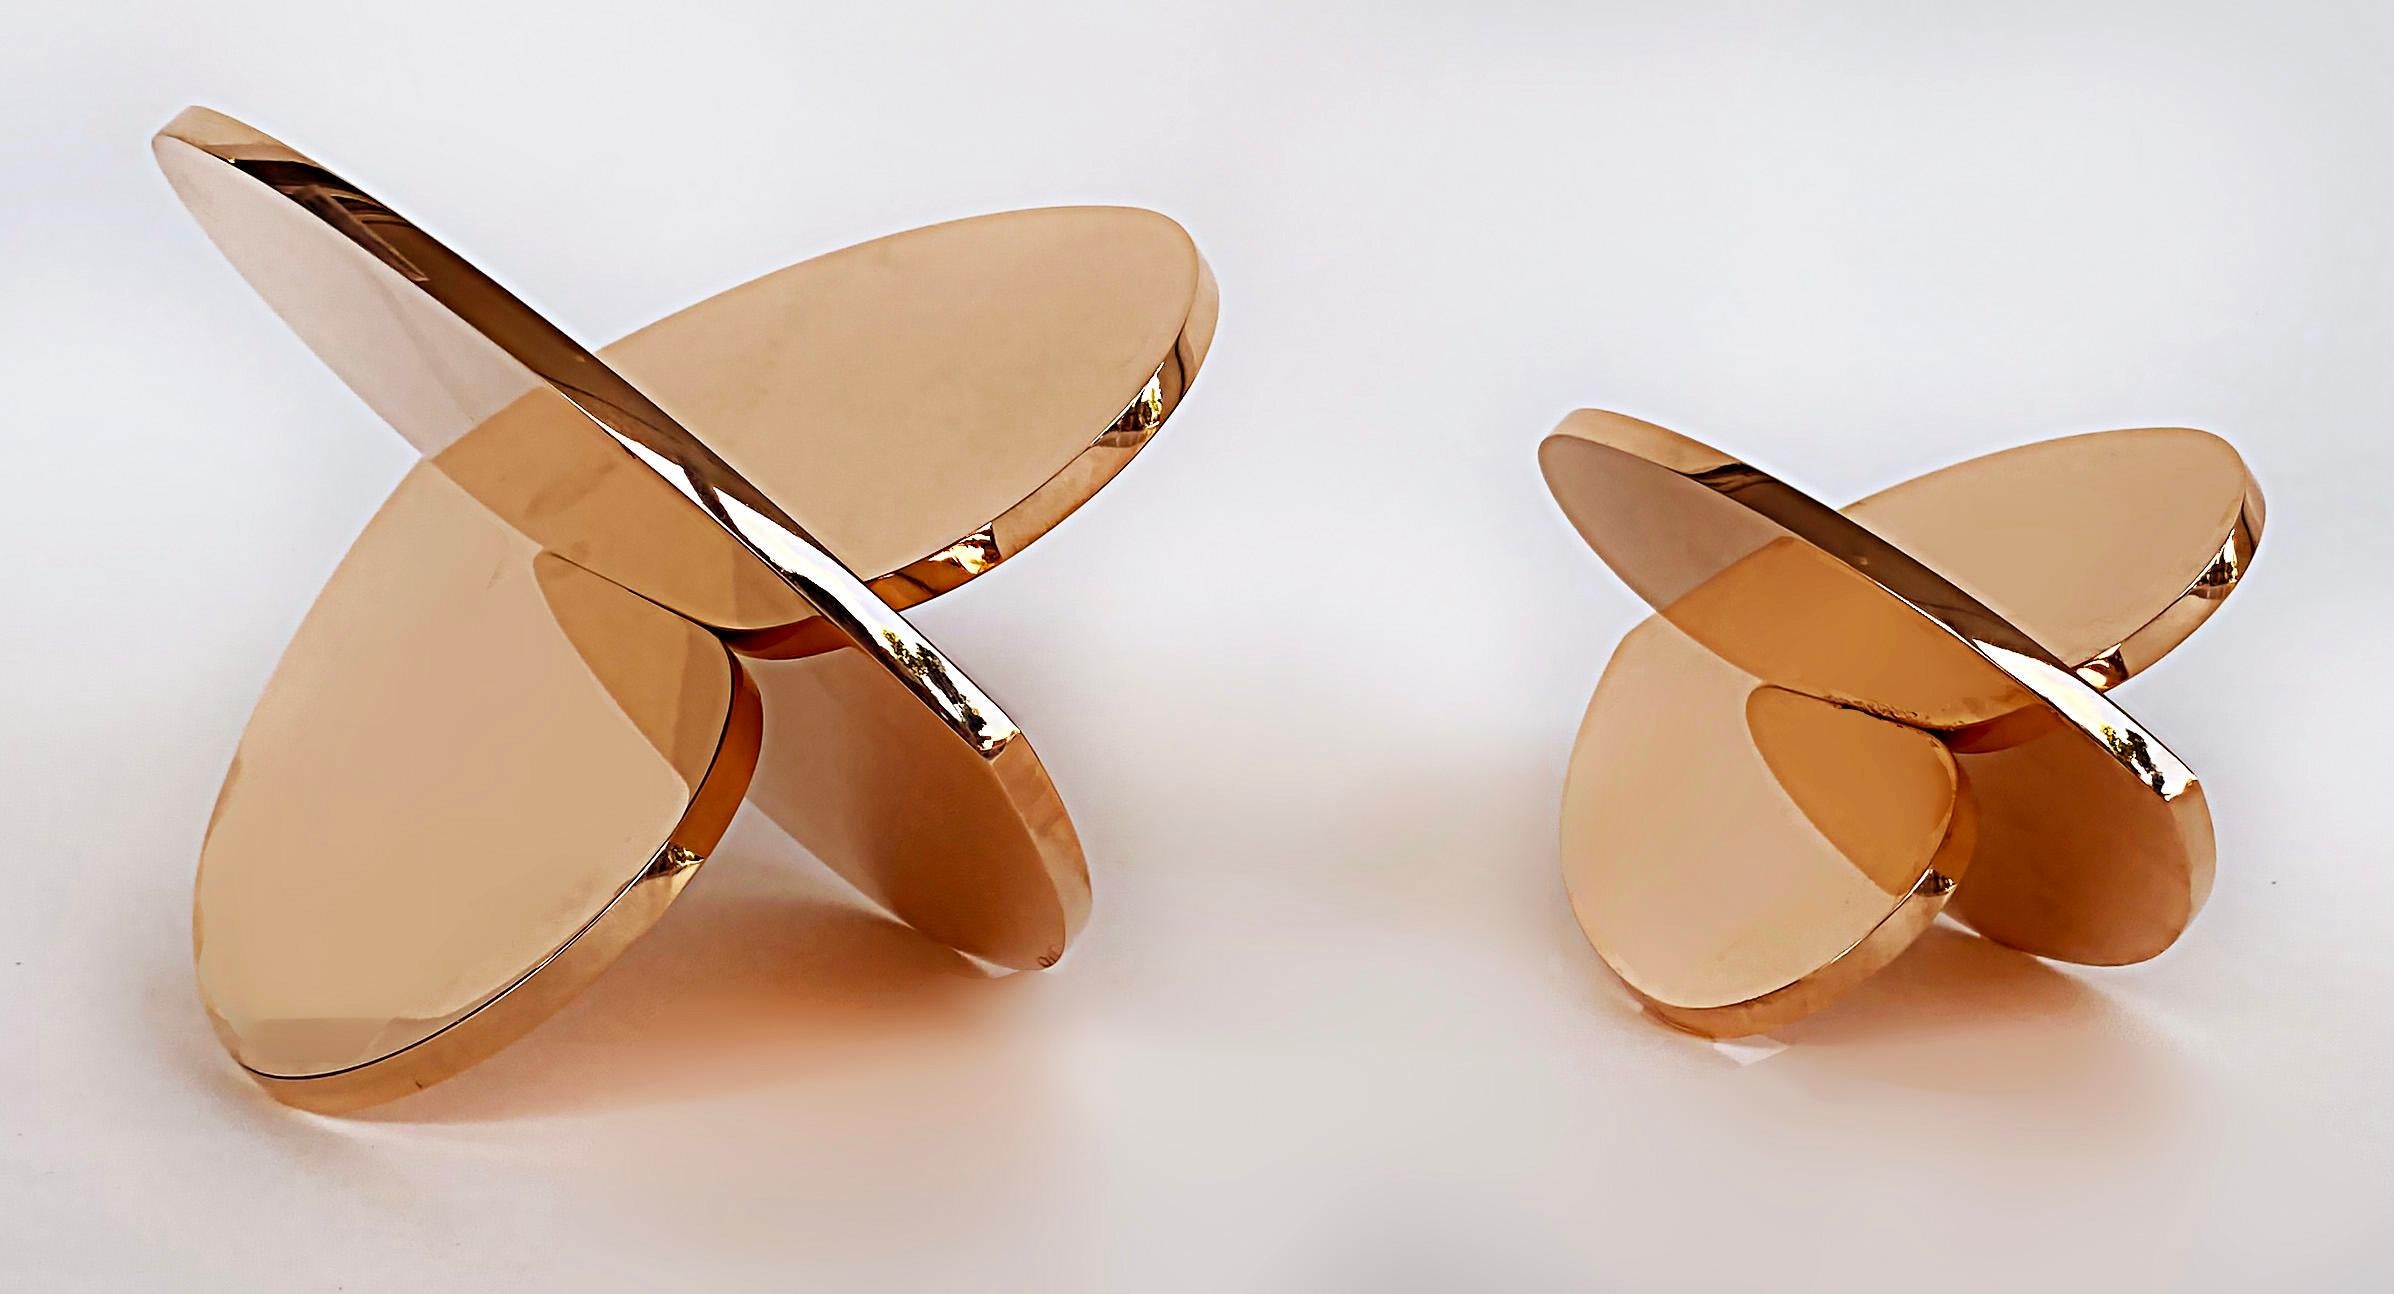 Copper Interlocking Heart Sculptures Michael Gitter & Phu Truong, Solid 4